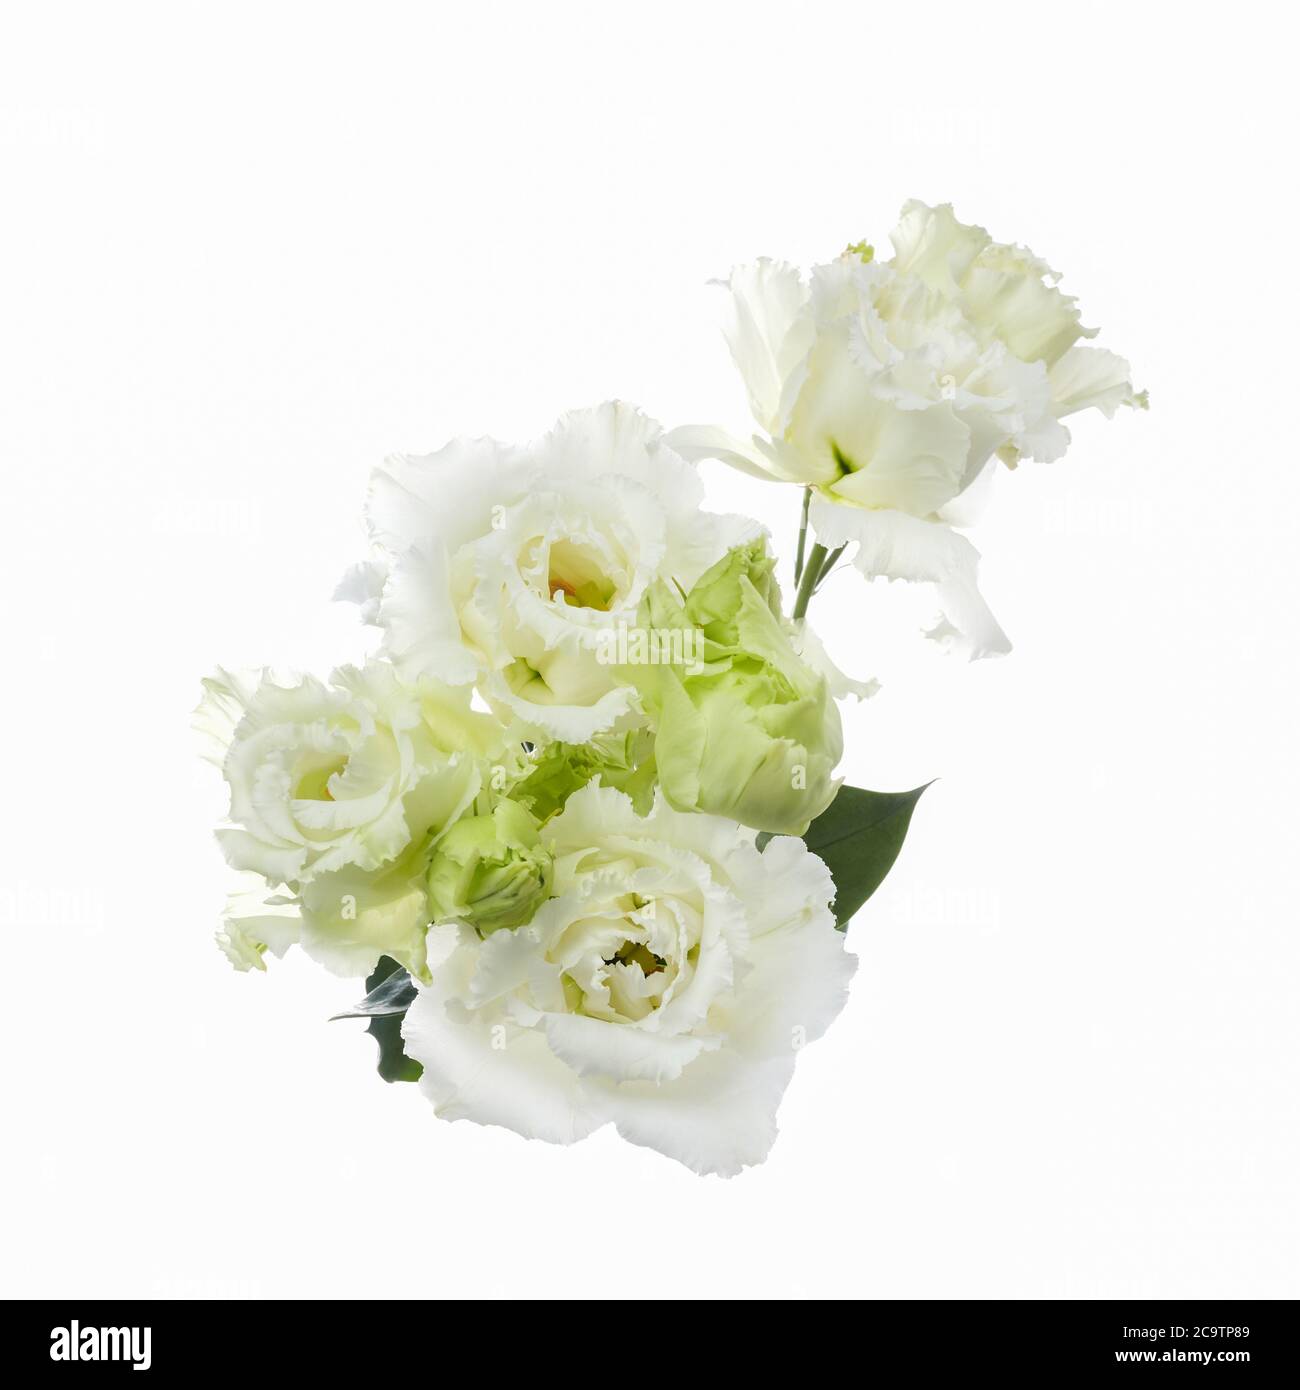 Beautiful white eustoma flowers isolated on white background. Spring or summer background. Stock Photo